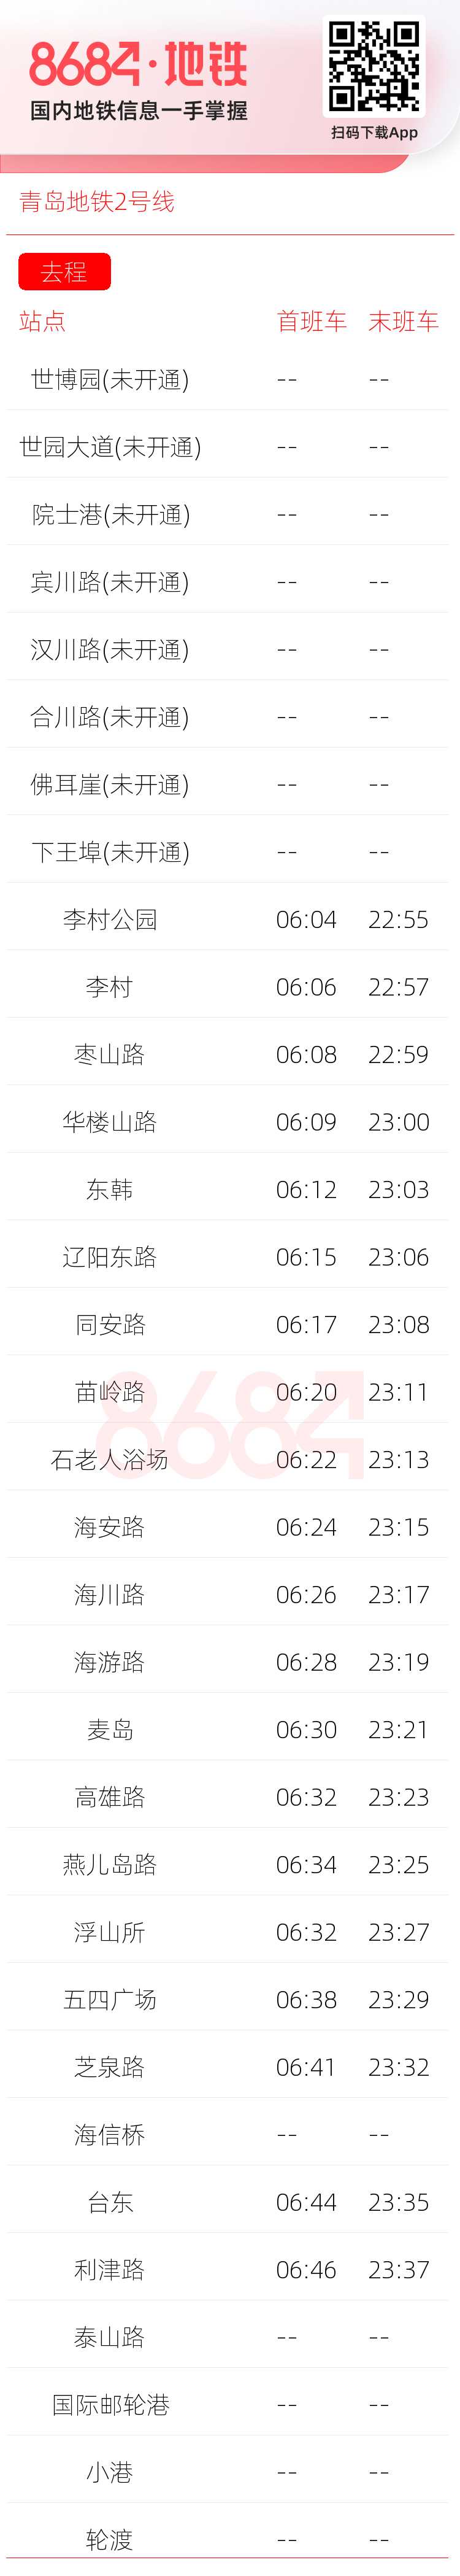 青岛地铁2号线运营时间表